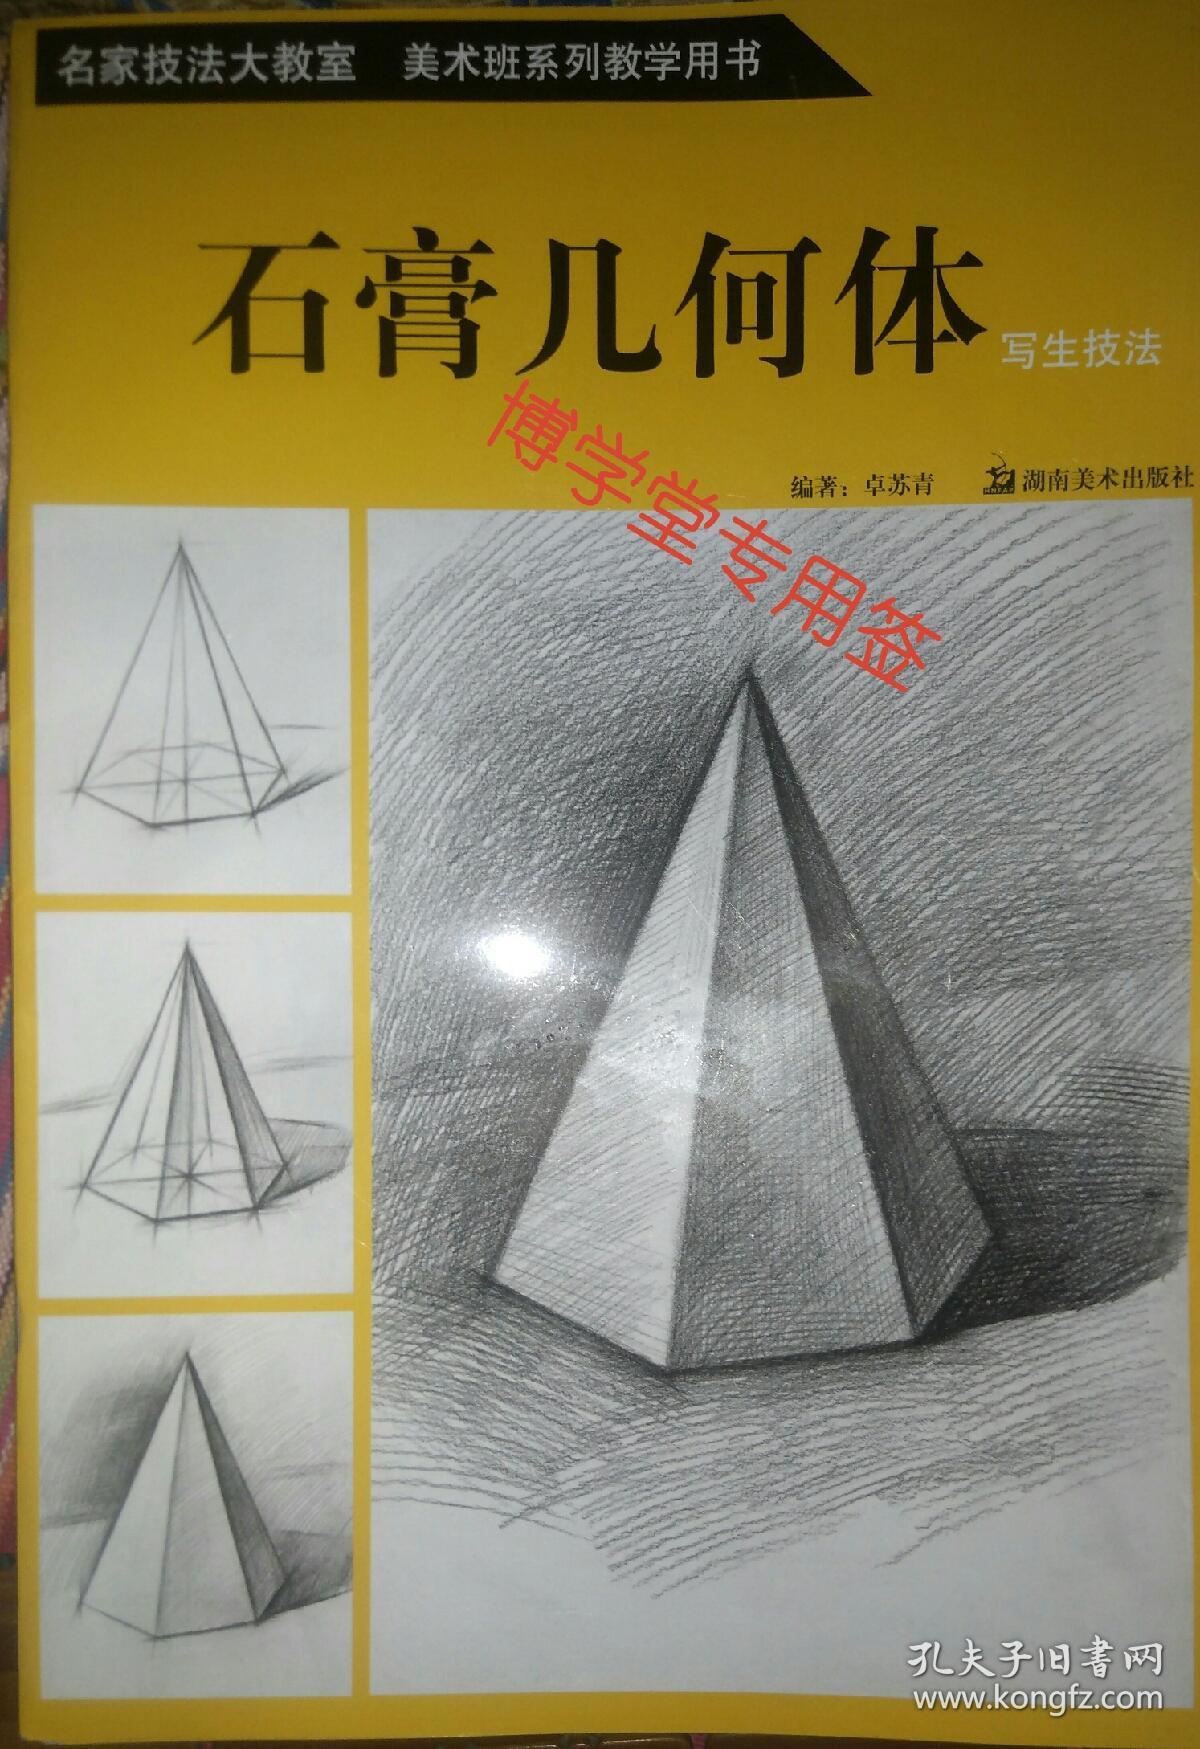 石膏几何体 写生技法    名家技法大教室 美术班系列教学用书